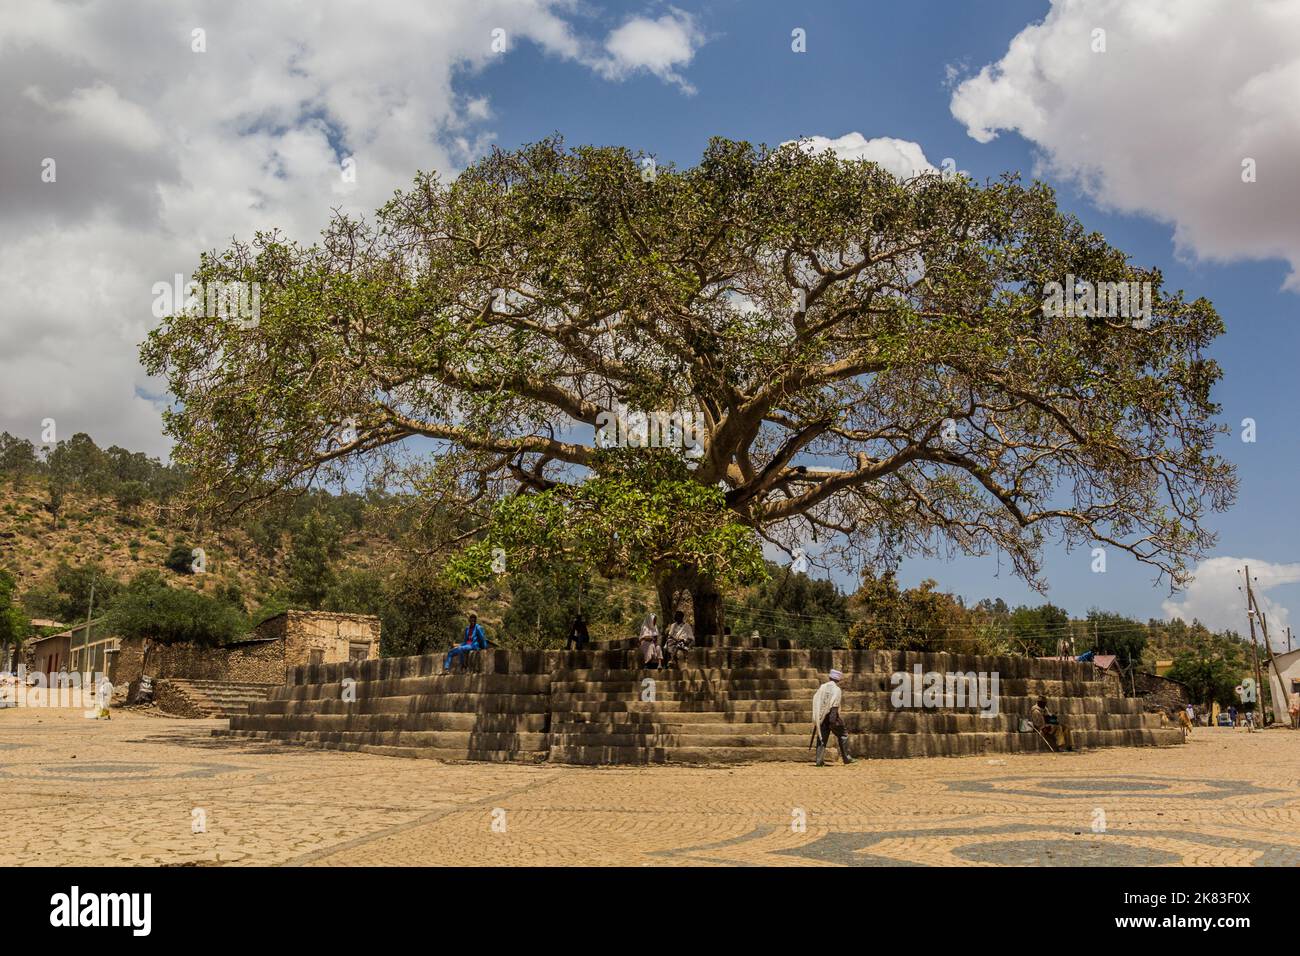 AXUM, ETHIOPIA - MARCH 19, 2019: Da'Ero Ela Fig Tree in Axum, Ethiopia Stock Photo